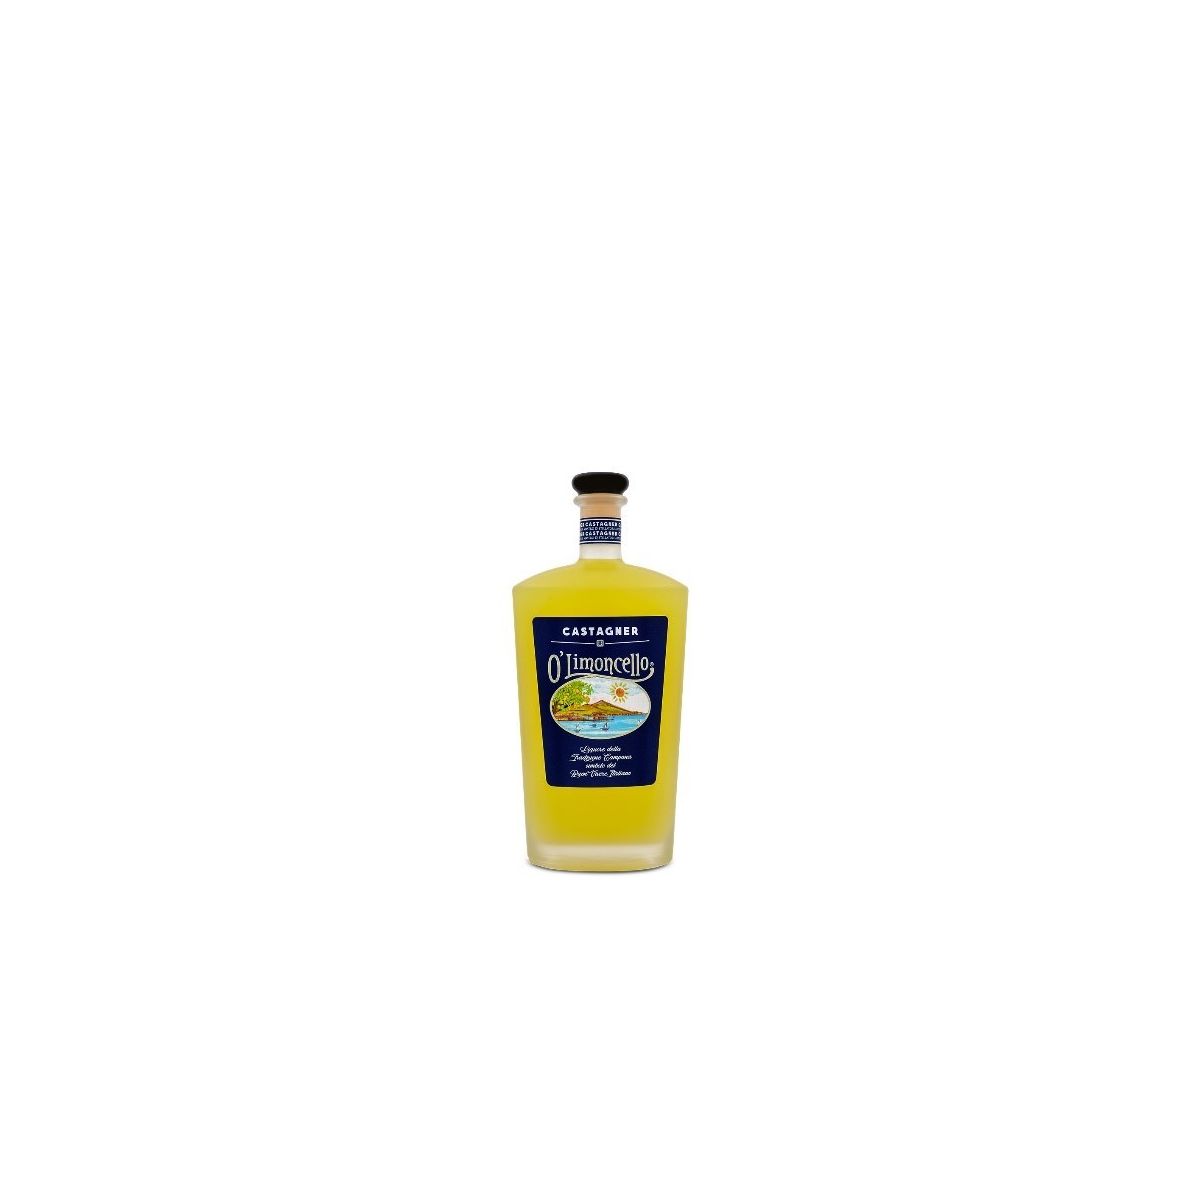 Castagner Limoncello -0,7L